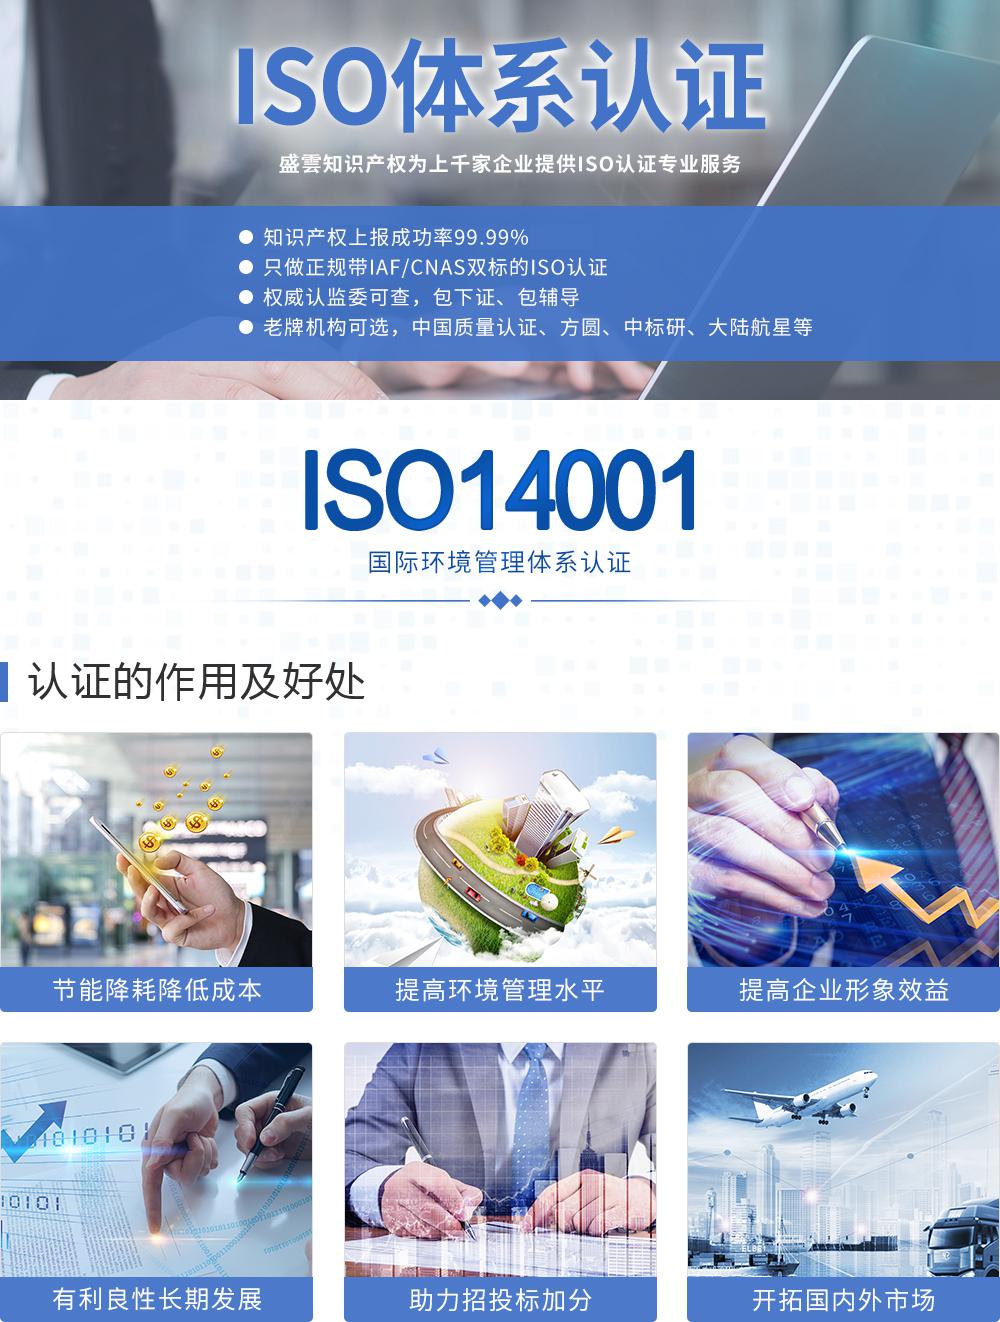 ISO14001環境管理體系保定盛雲知識產權代理有限公司